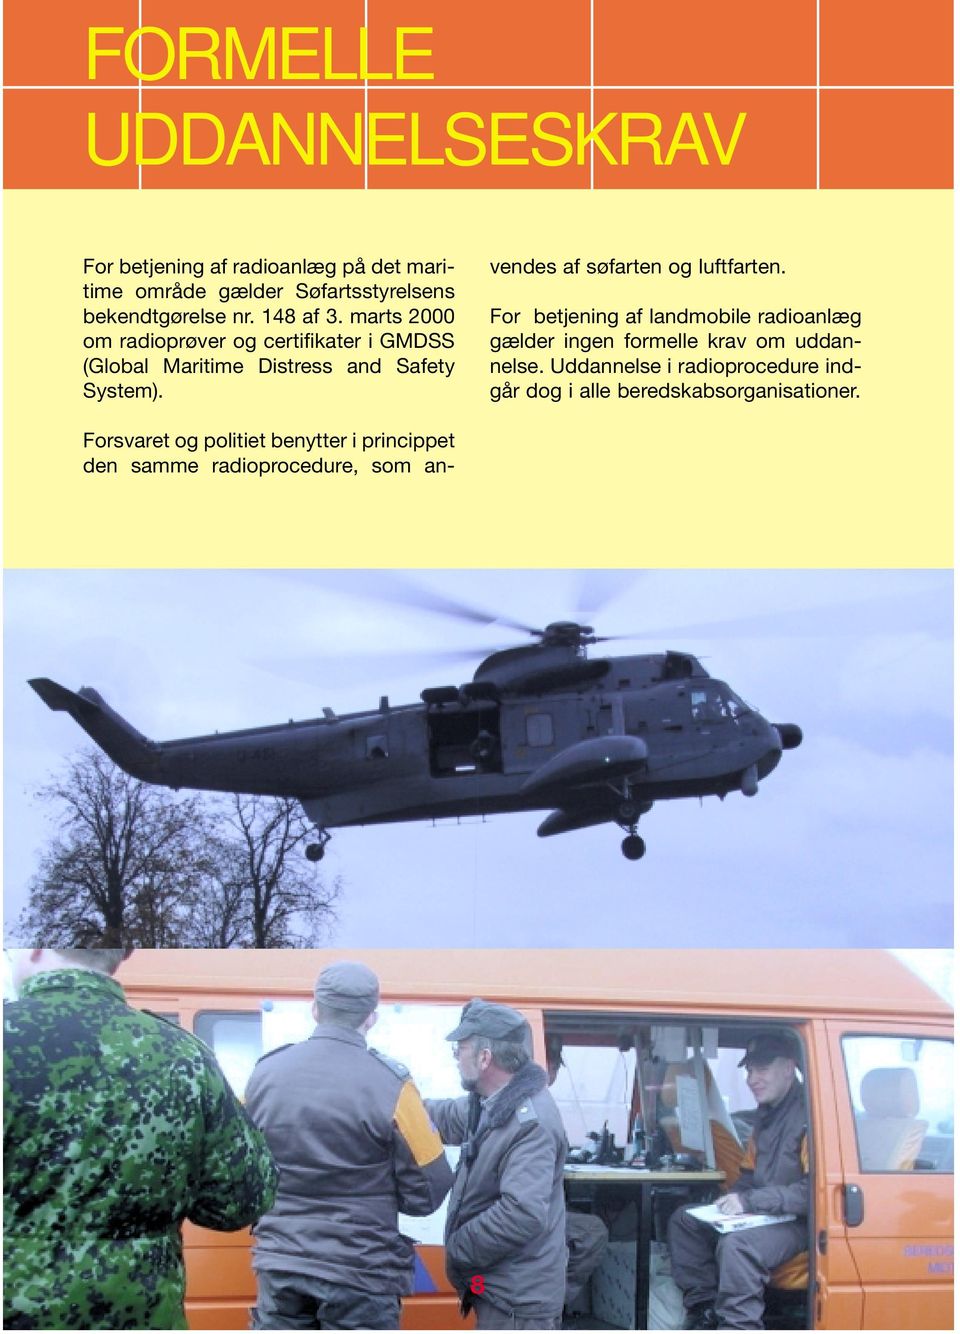 Forsvaret og politiet benytter i princippet den samme radioprocedure, som anvendes af søfarten og luftfarten.